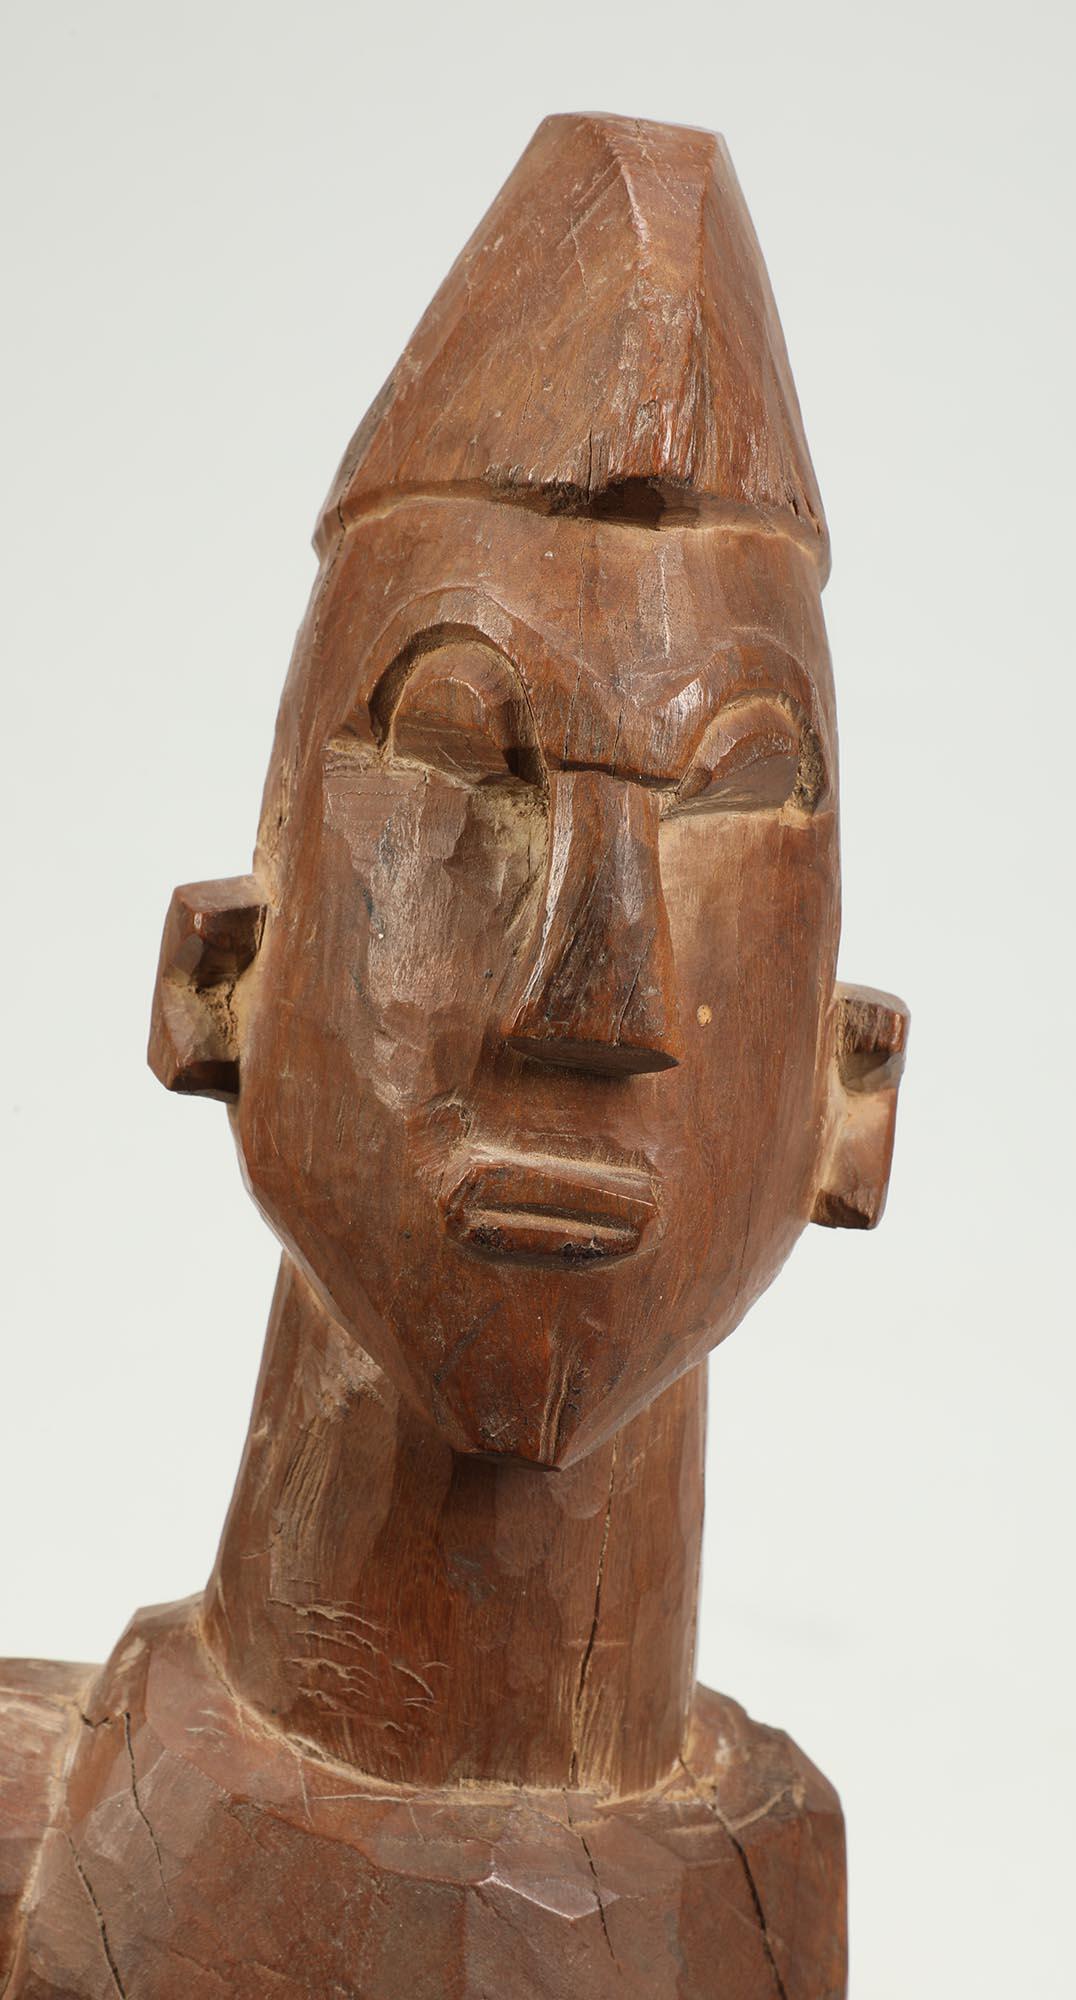 Grande figure géométrique finement sculptée des Lobi, du Ghana et du Burkina Faso, datant du début ou du milieu du XXe siècle. Il a un regard intense et captivant, un bras replié sur la poitrine et l'autre sur le côté. Sculptée dans un bois très